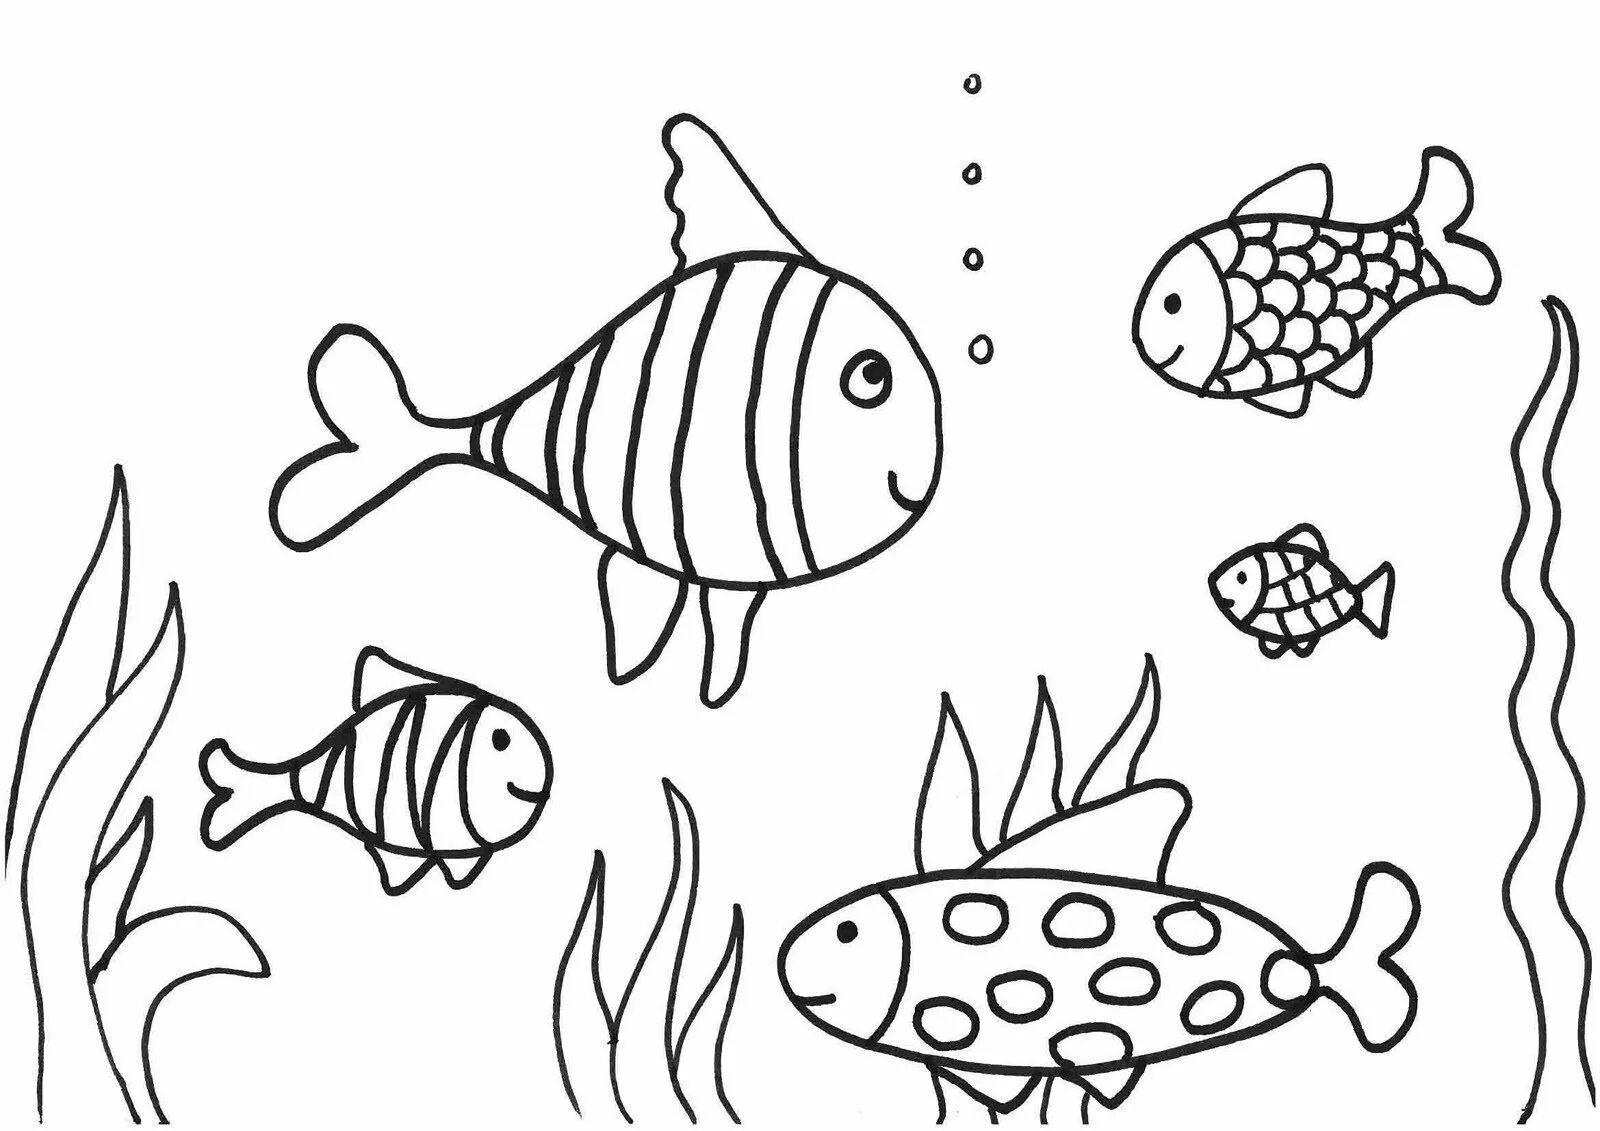 Раскраска рыбы для детей 6 лет. Раскраска рыбка. Рыбка для раскрашивания для детей. Рыбка раскраска для детей. Аквариумные рыбки раскраска для детей.